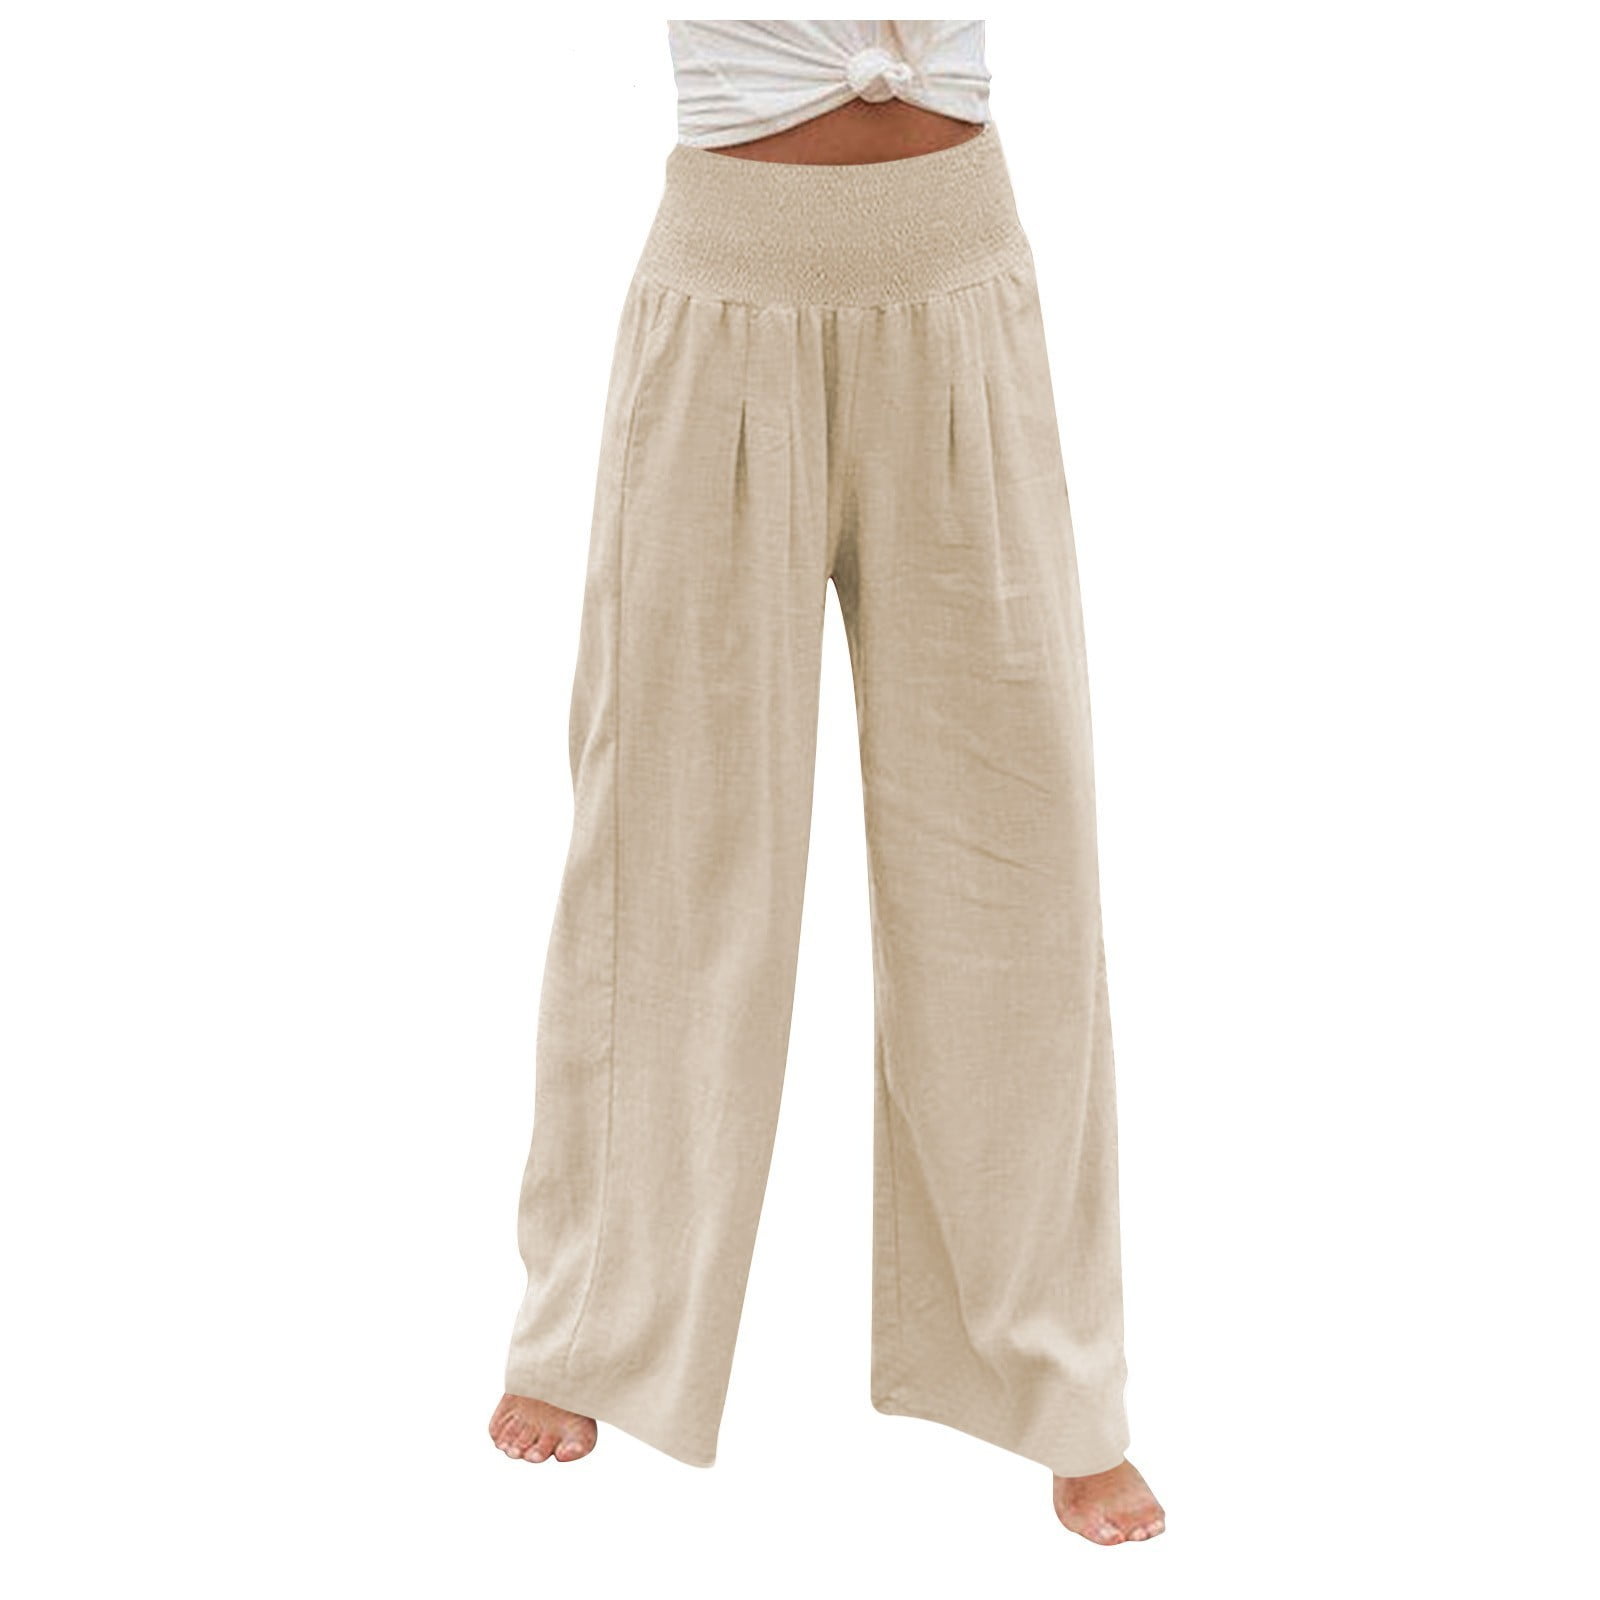 Women's Linen Pants for sale in Money, Virginia, Facebook Marketplace